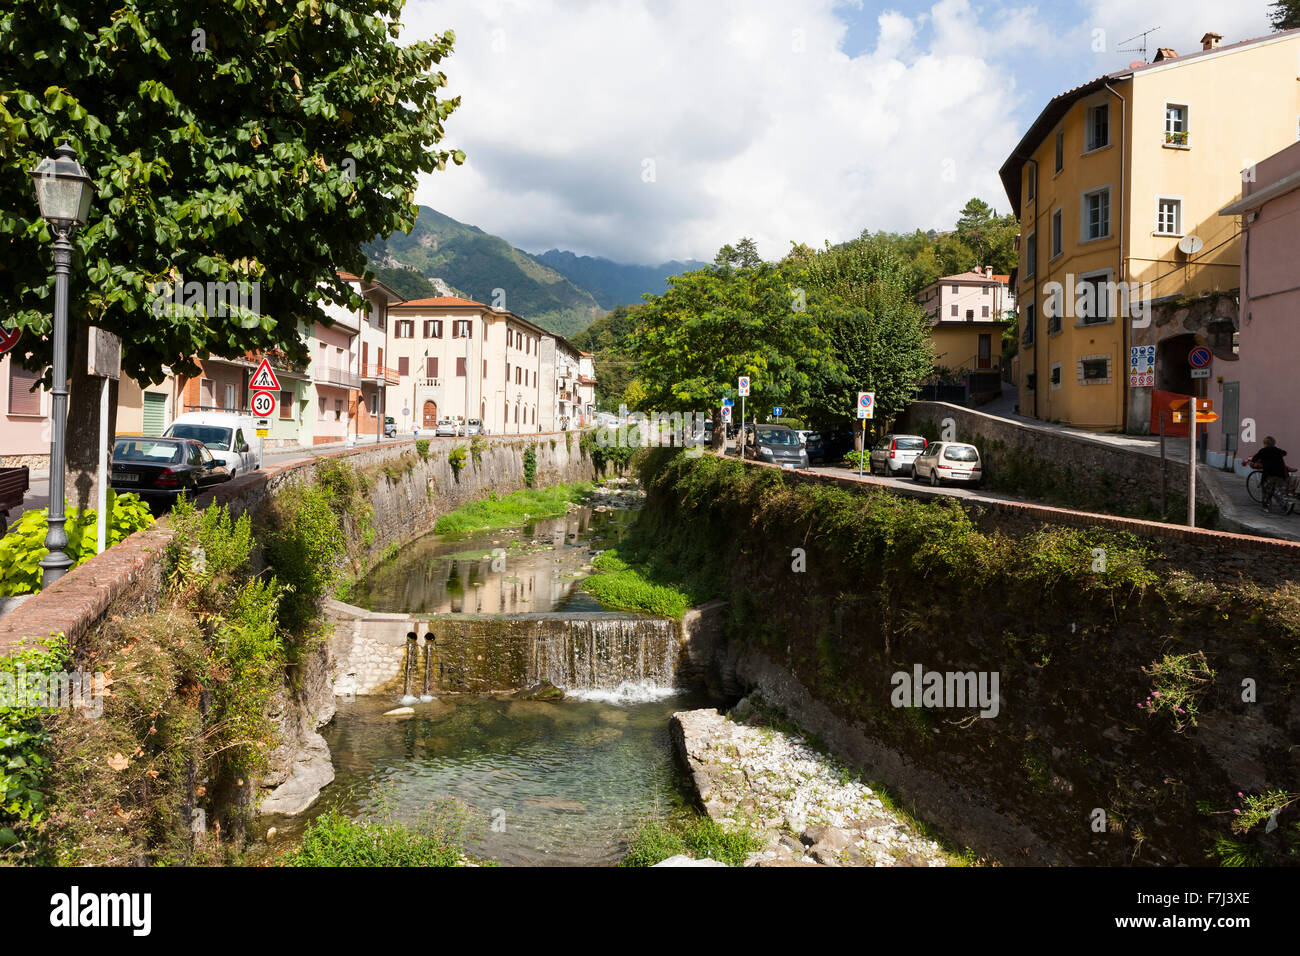 Fiume Versilia river flows through Seravezza, Tuscany Stock Photo